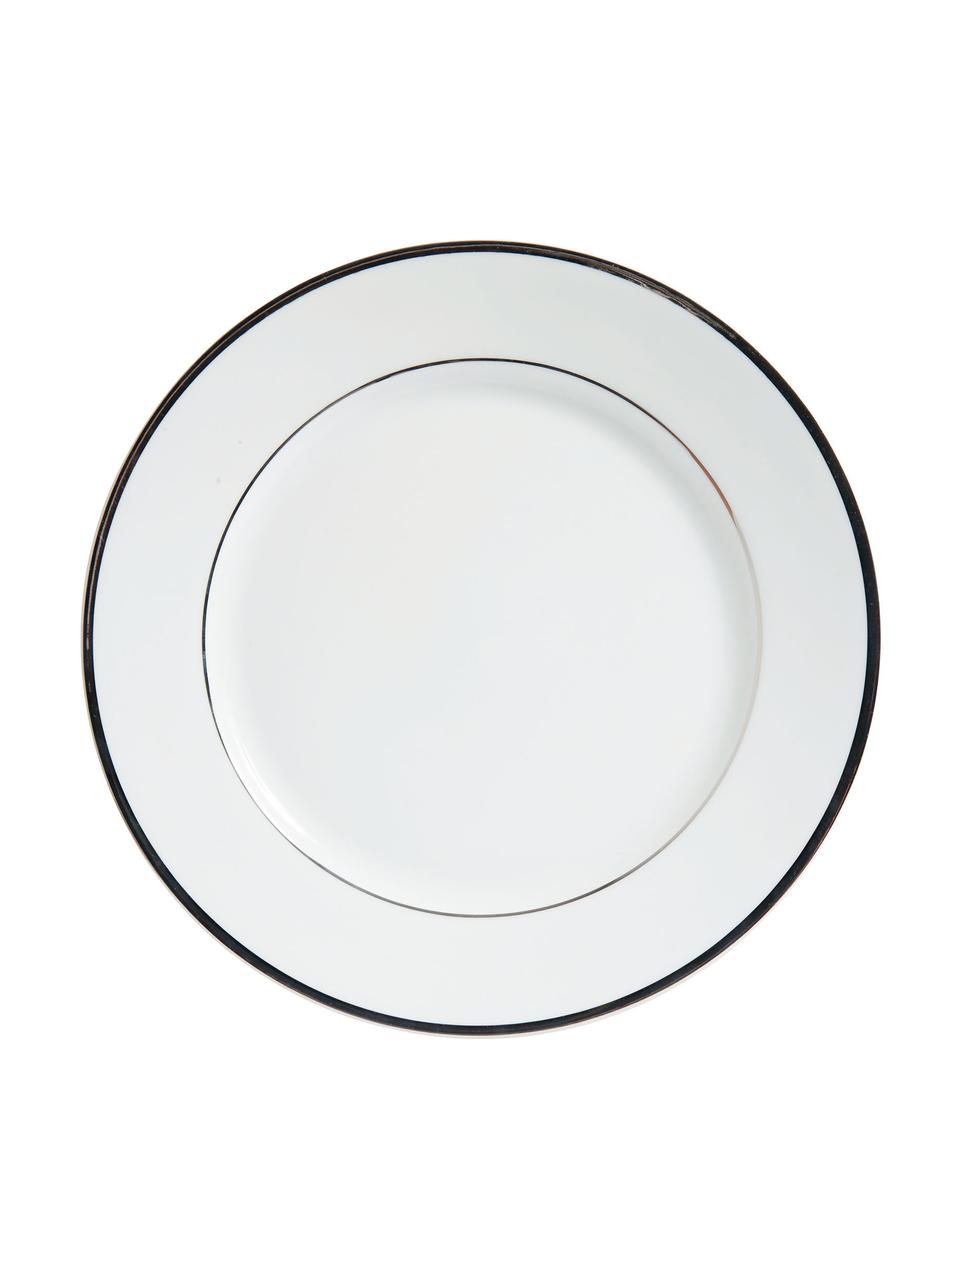 Assiette à dessert porcelaine bord argenté Ginger, 6 pièces, Porcelaine, Blanc, couleur argentée, Ø 20 cm